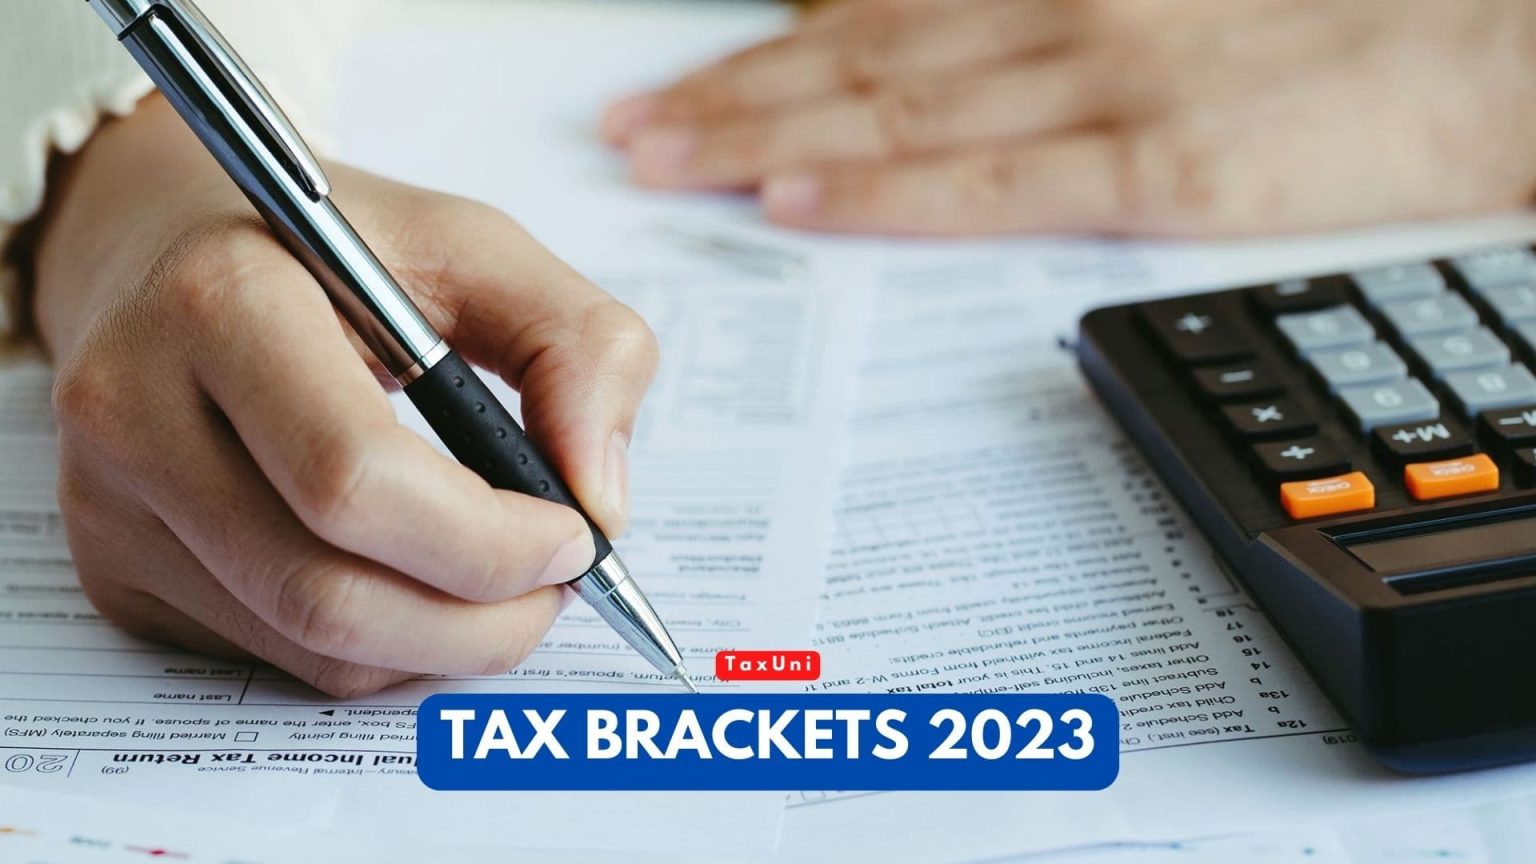 Tax Brackets 2023 TaxUni Cover 1 1536x864 